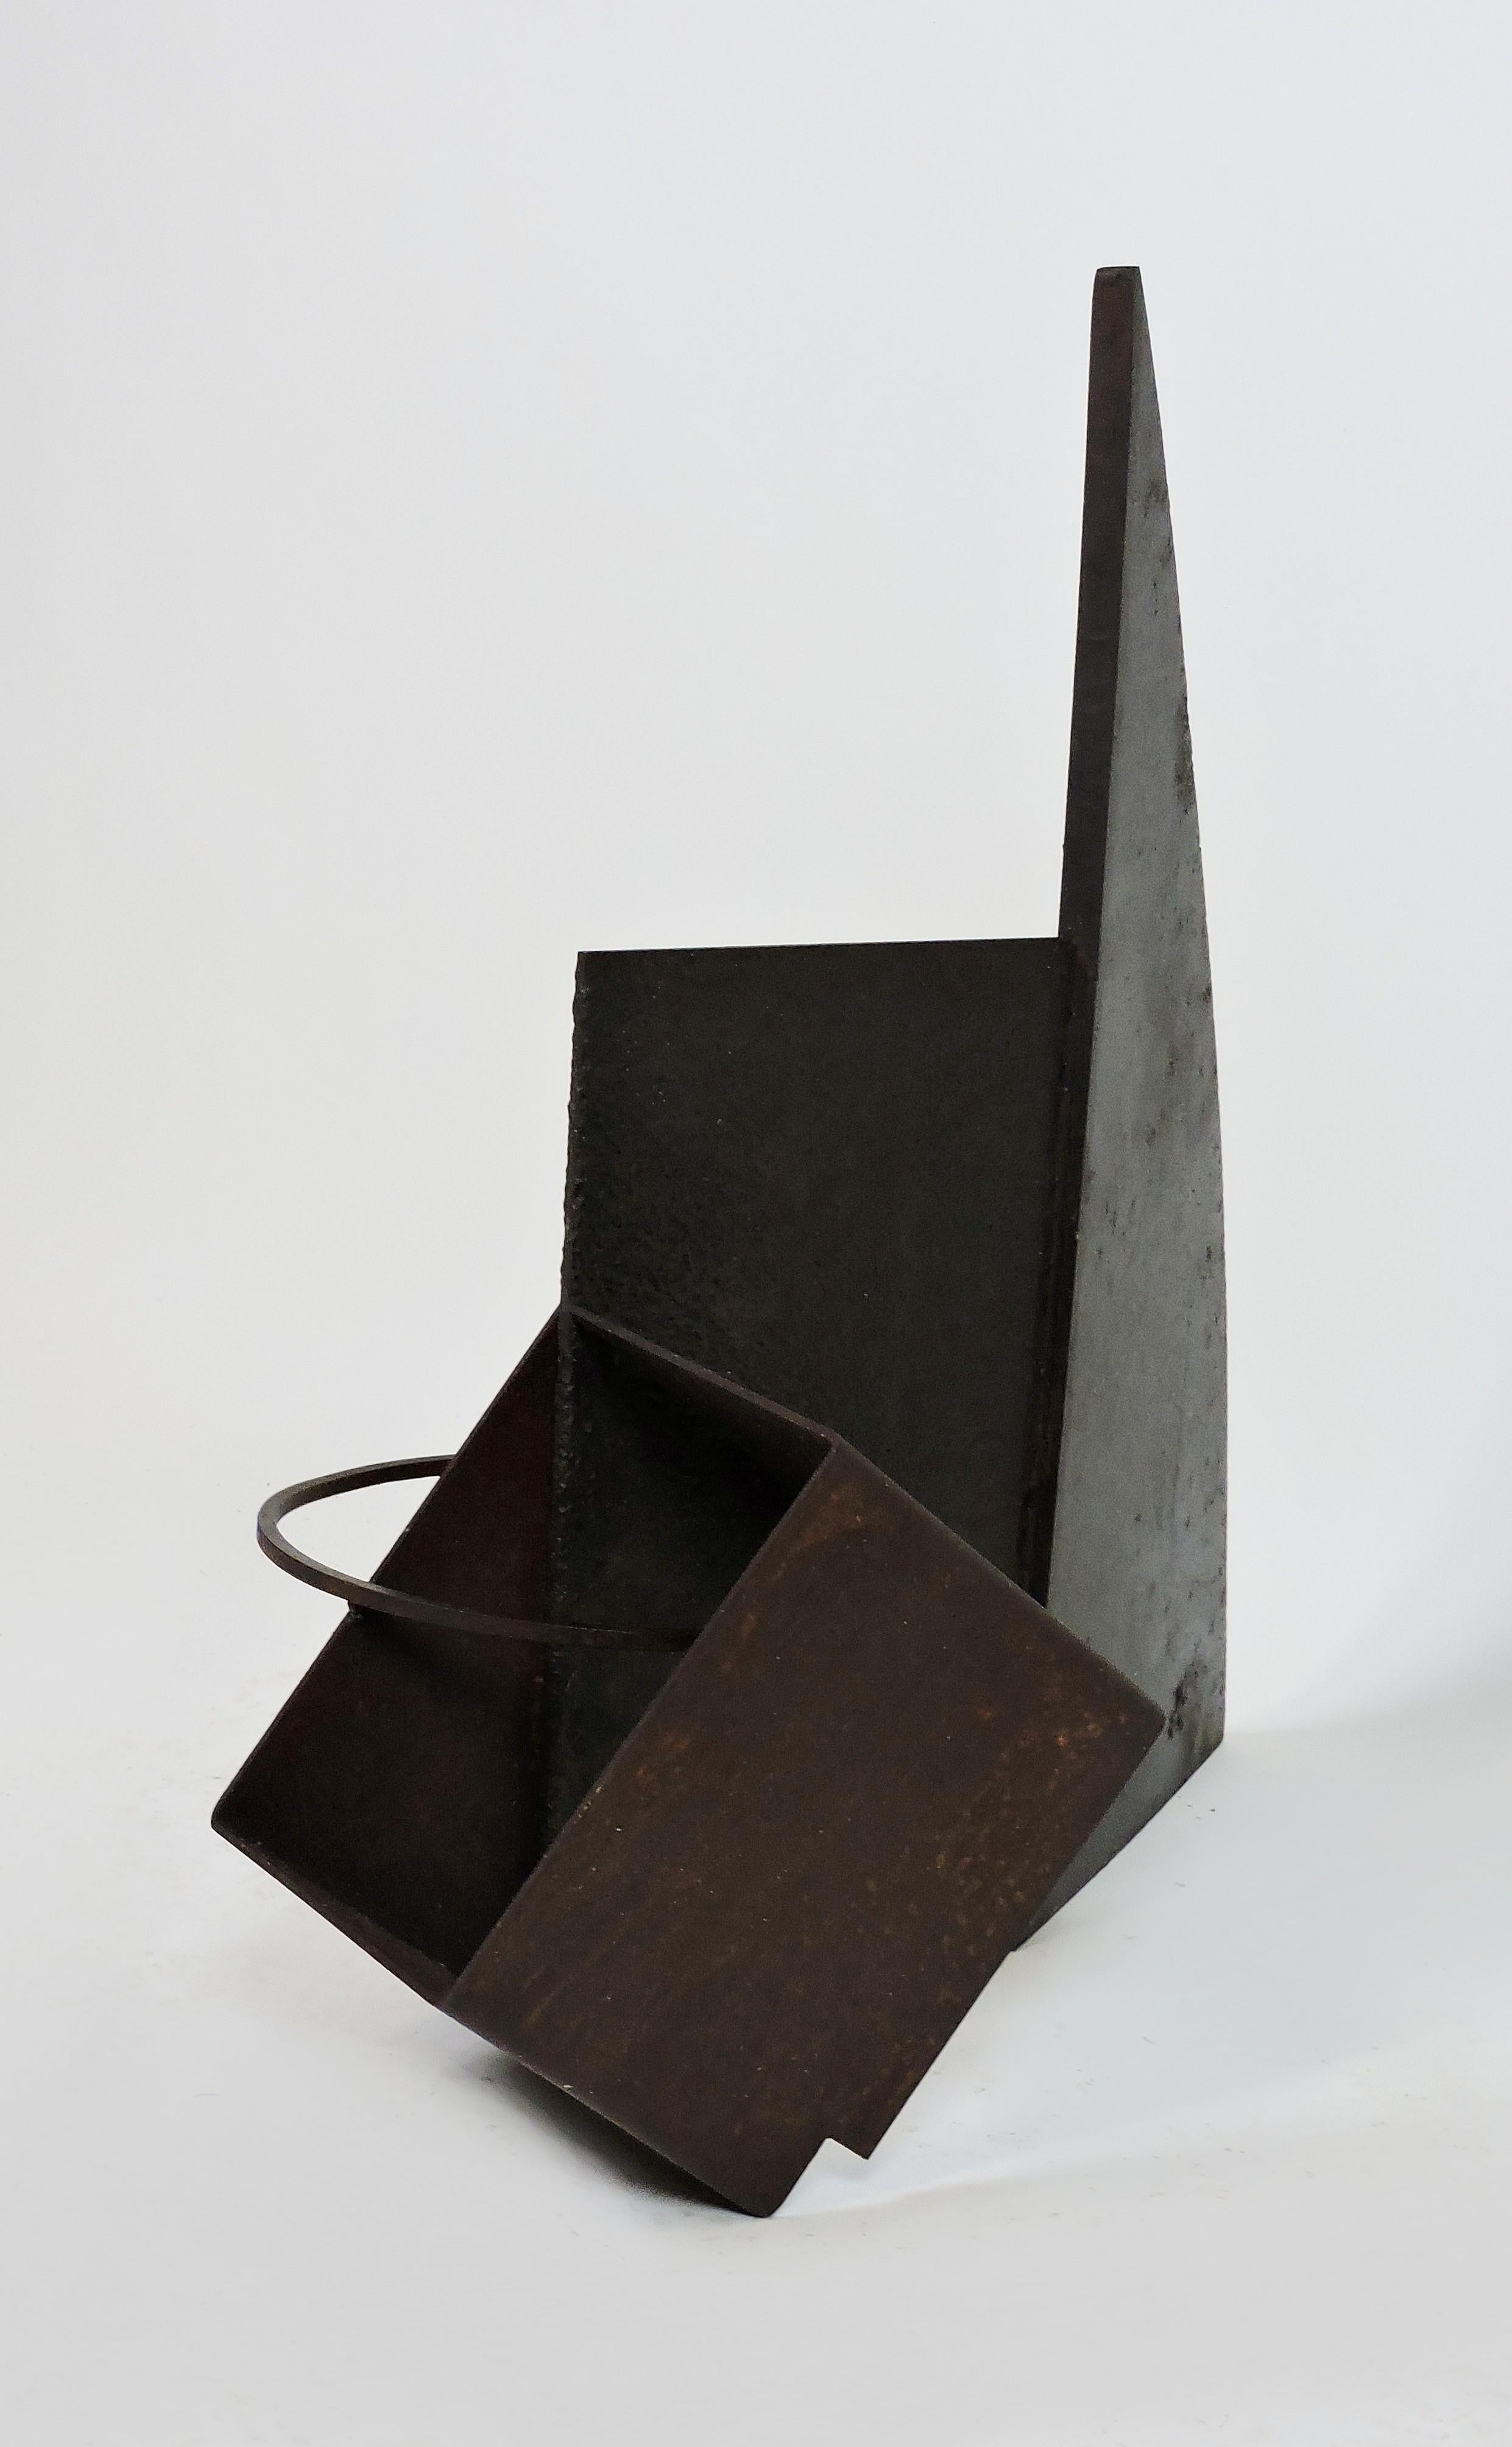 Sculpture géométrique en acier soudé de style minimaliste réalisée par l'artiste David Tothero, basé à Philadelphie. Cette pièce présente un mélange de formes géométriques fortes et est signée de la signature d'artiste soudée DT dans le coin